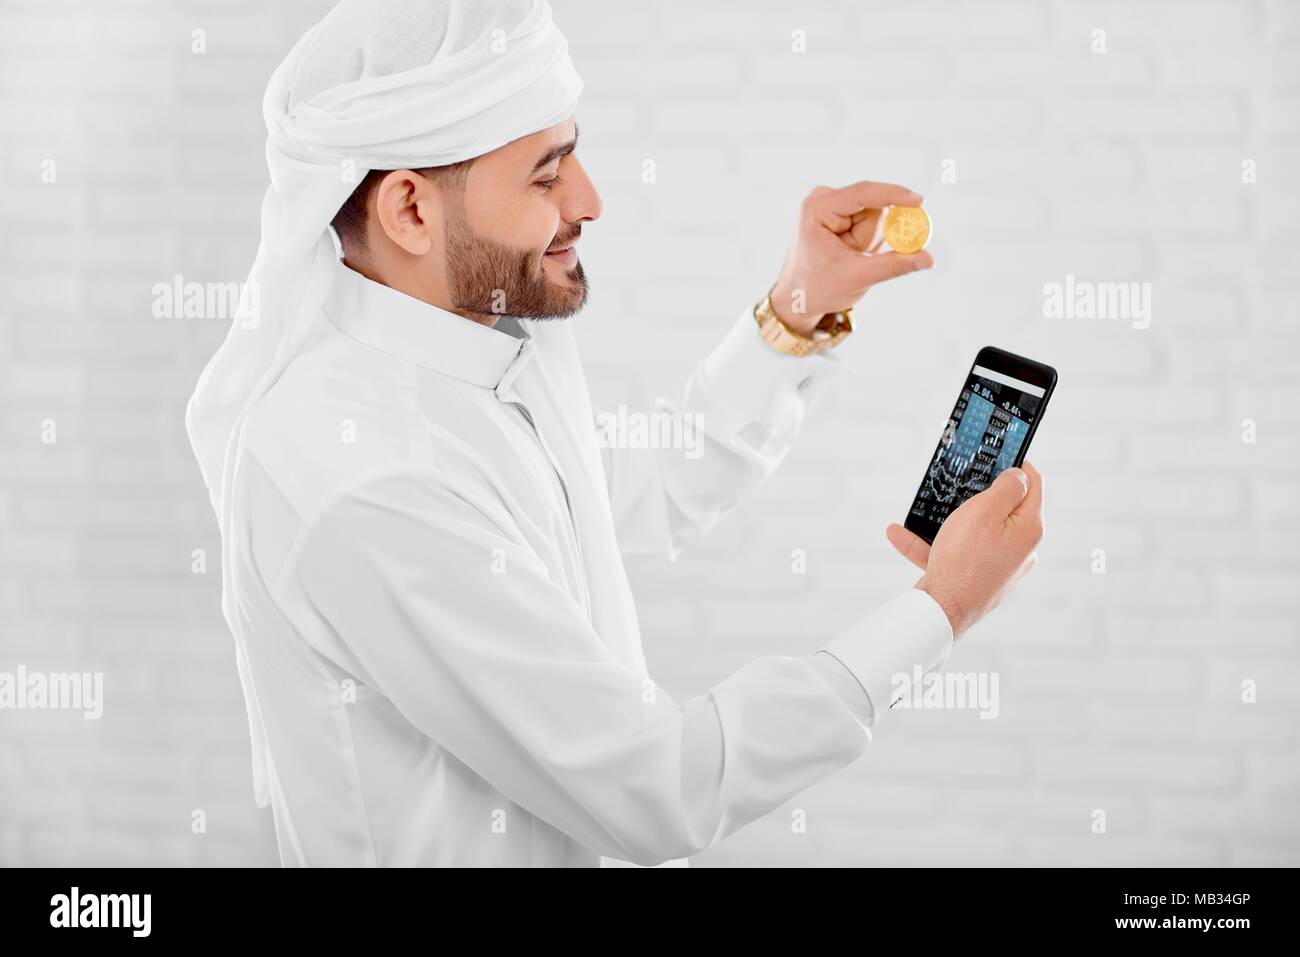 Jeune musulman maintient l'opérateur de téléphonie mobile et pièce d'or dans l'autre main. Il est sur le fond de studio blanc. Un homme a l'air heureux et impliqués. Banque D'Images